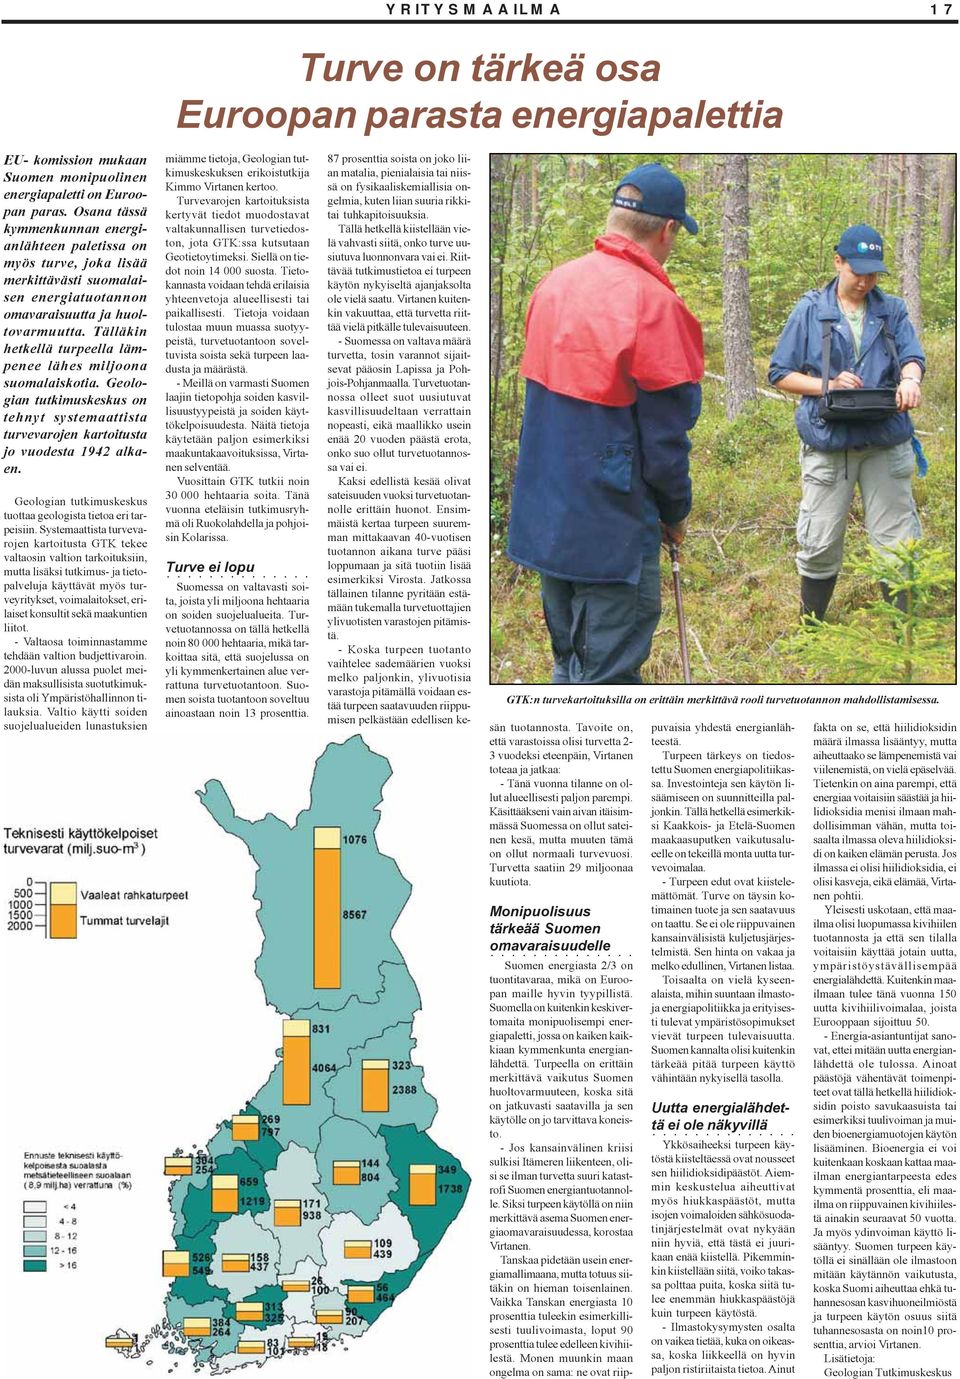 Tälläkin hetkellä turpeella lämpenee lähes miljoona suomalaiskotia. Geologian tutkimuskeskus on tehnyt systemaattista turvevarojen kartoitusta jo vuodesta 1942 alkaen.